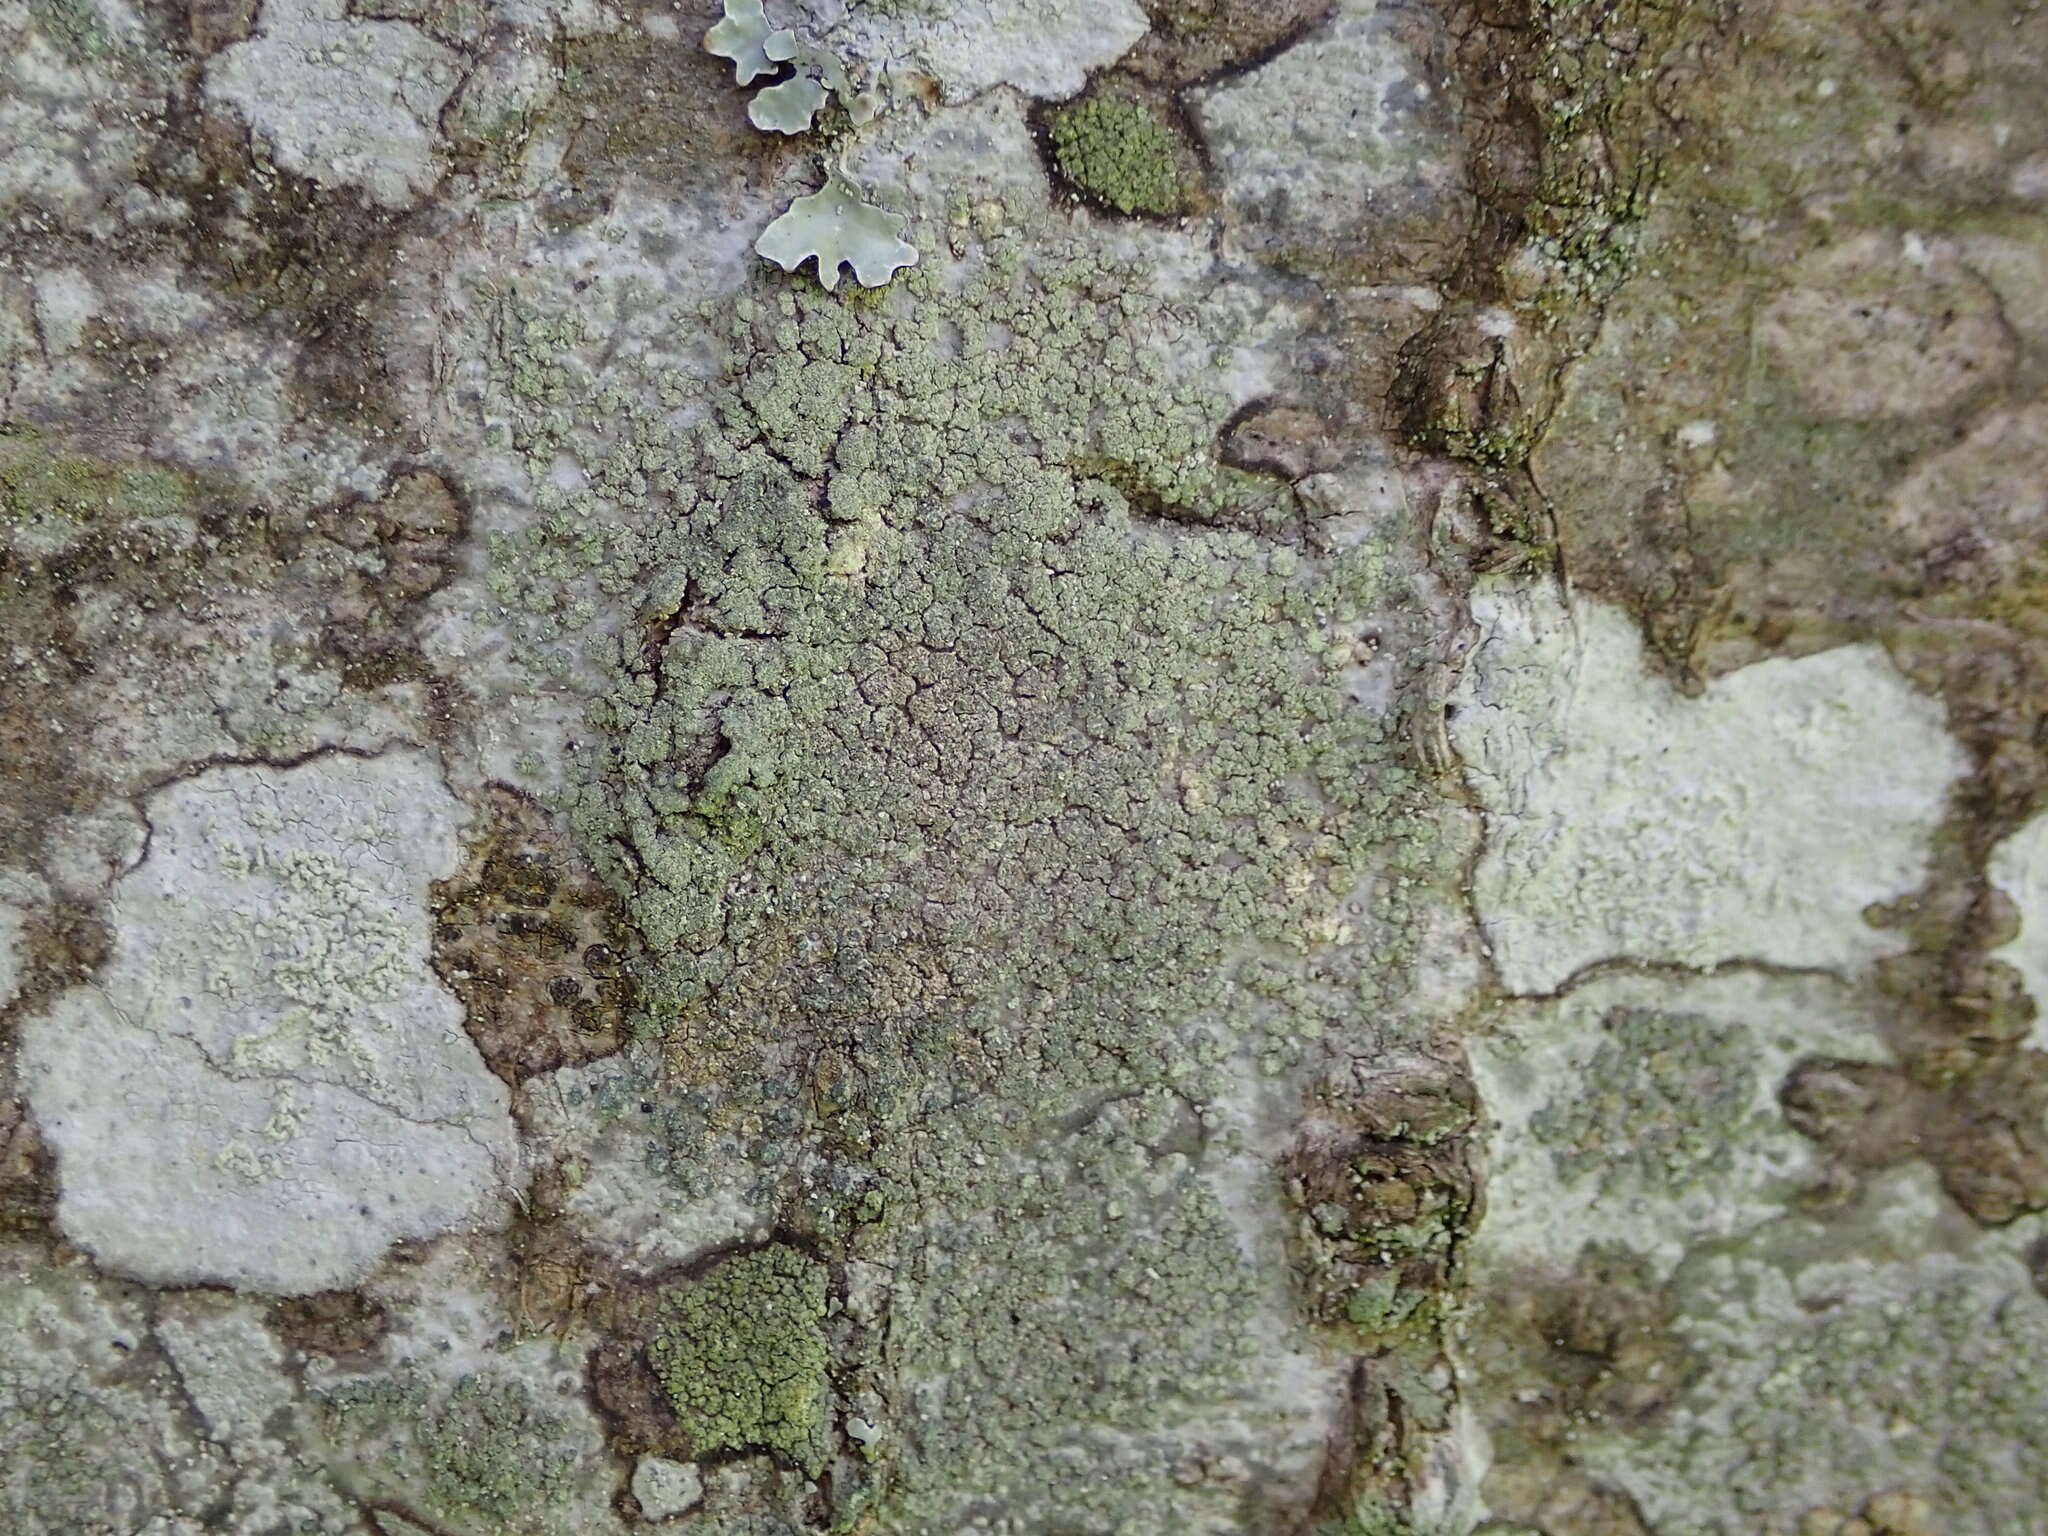 Image de Buellia griseovirens (Turner & Borrer ex Sm.) Almb.